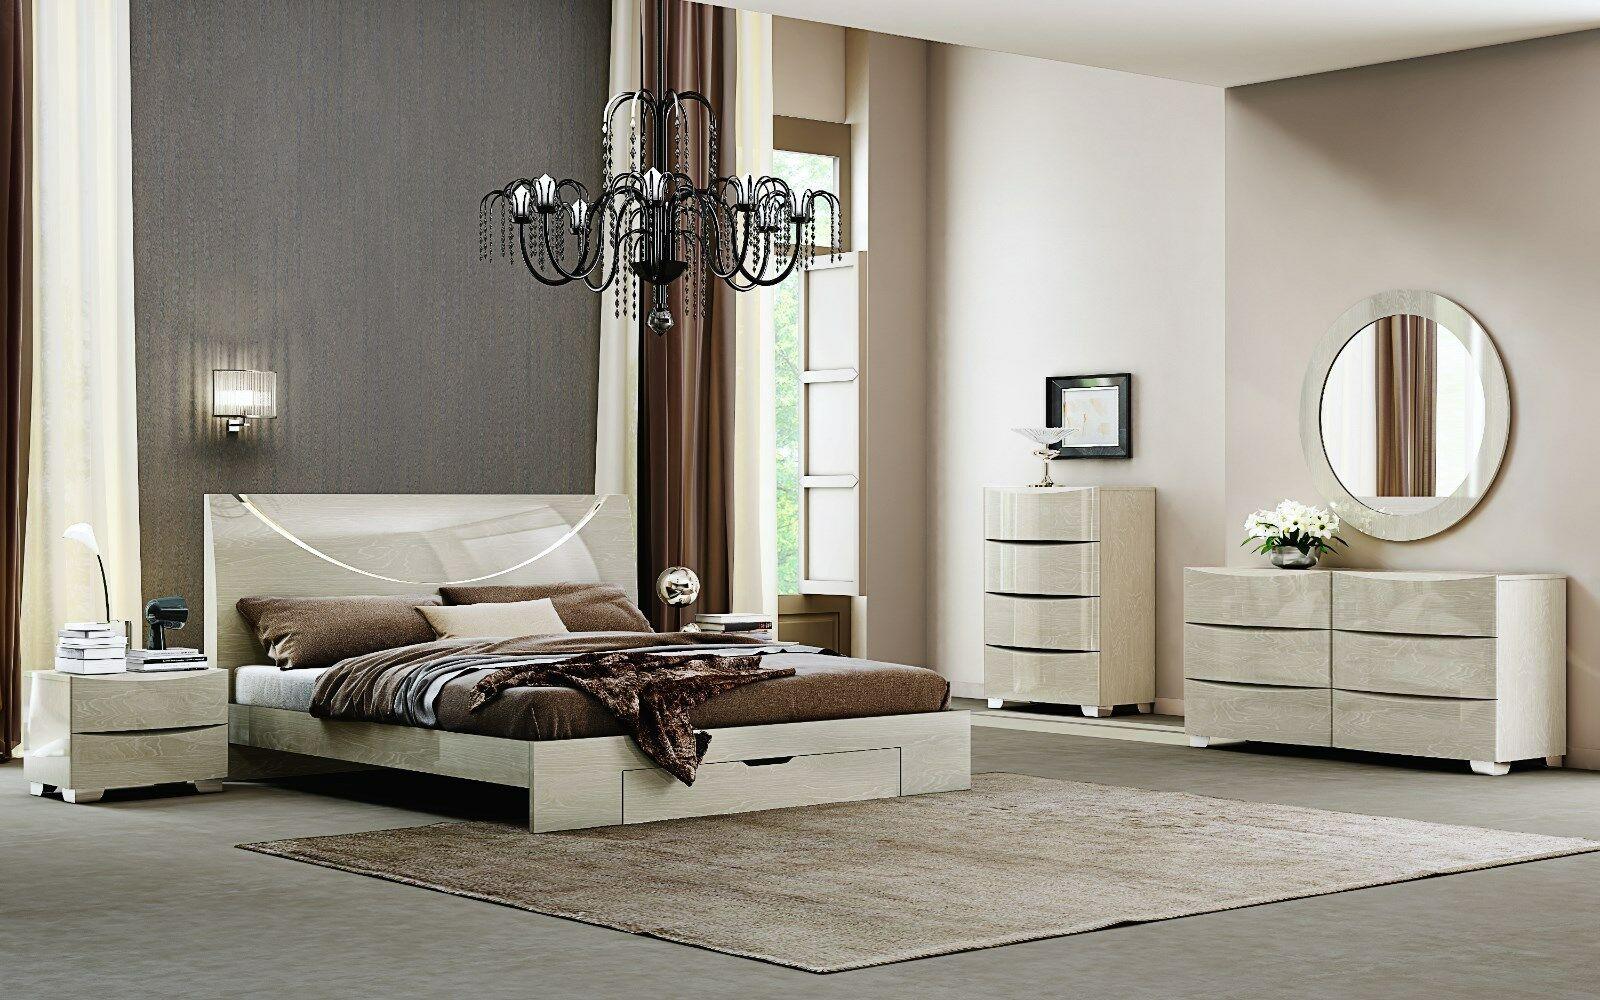 Modern Platform Bedroom Set NOLA-LIGHT WALNUT NOLA-LIGHT WALNUT-Q-5-PC in Light Walnut Lacquer